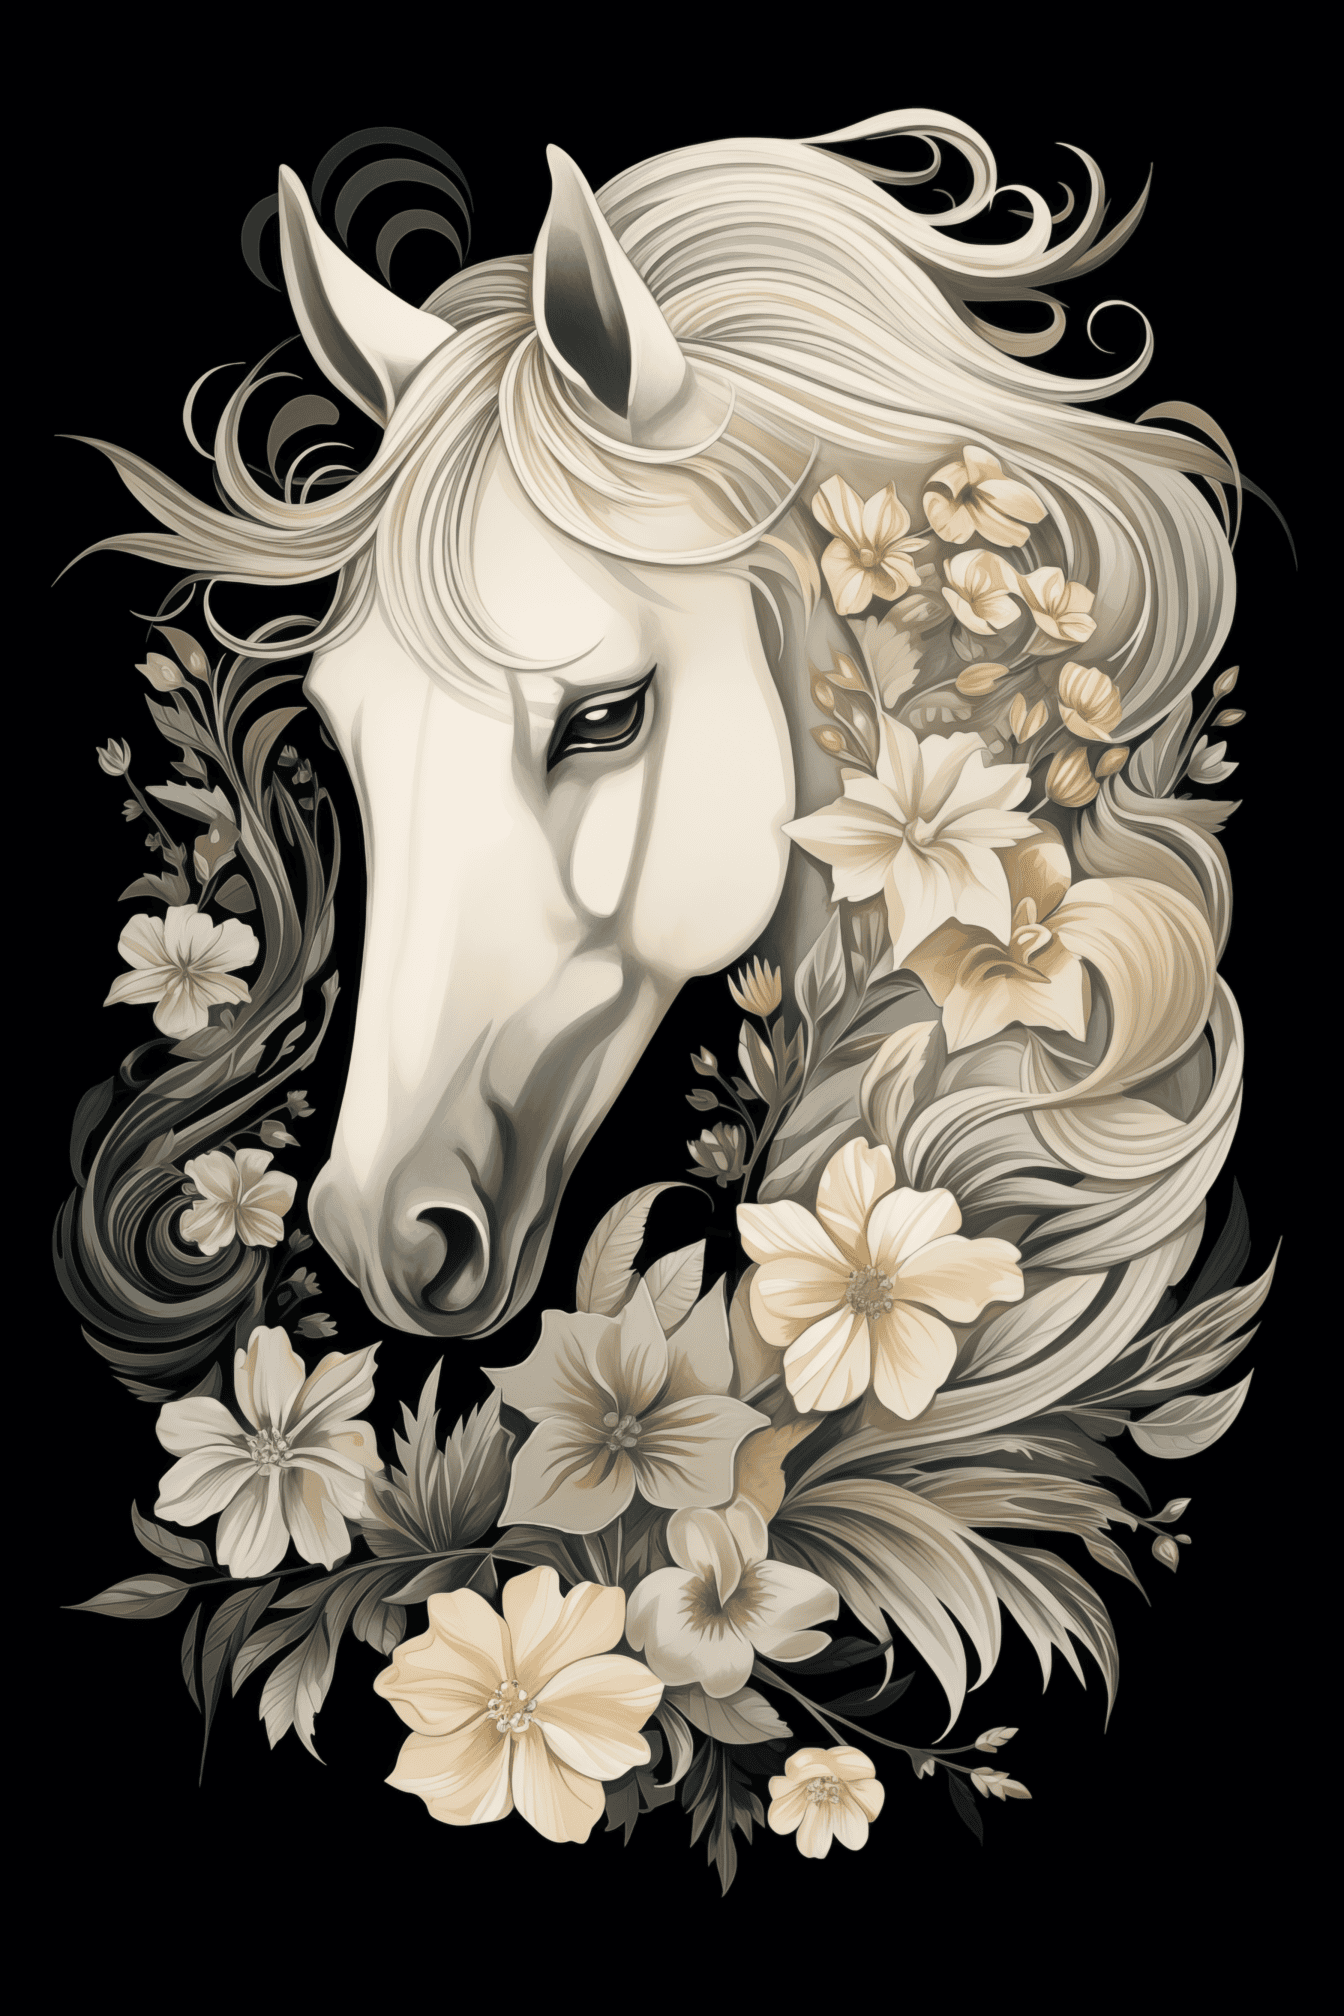 Ilustração preta e branca de uma cabeça de cavalo branco com decorações de flores